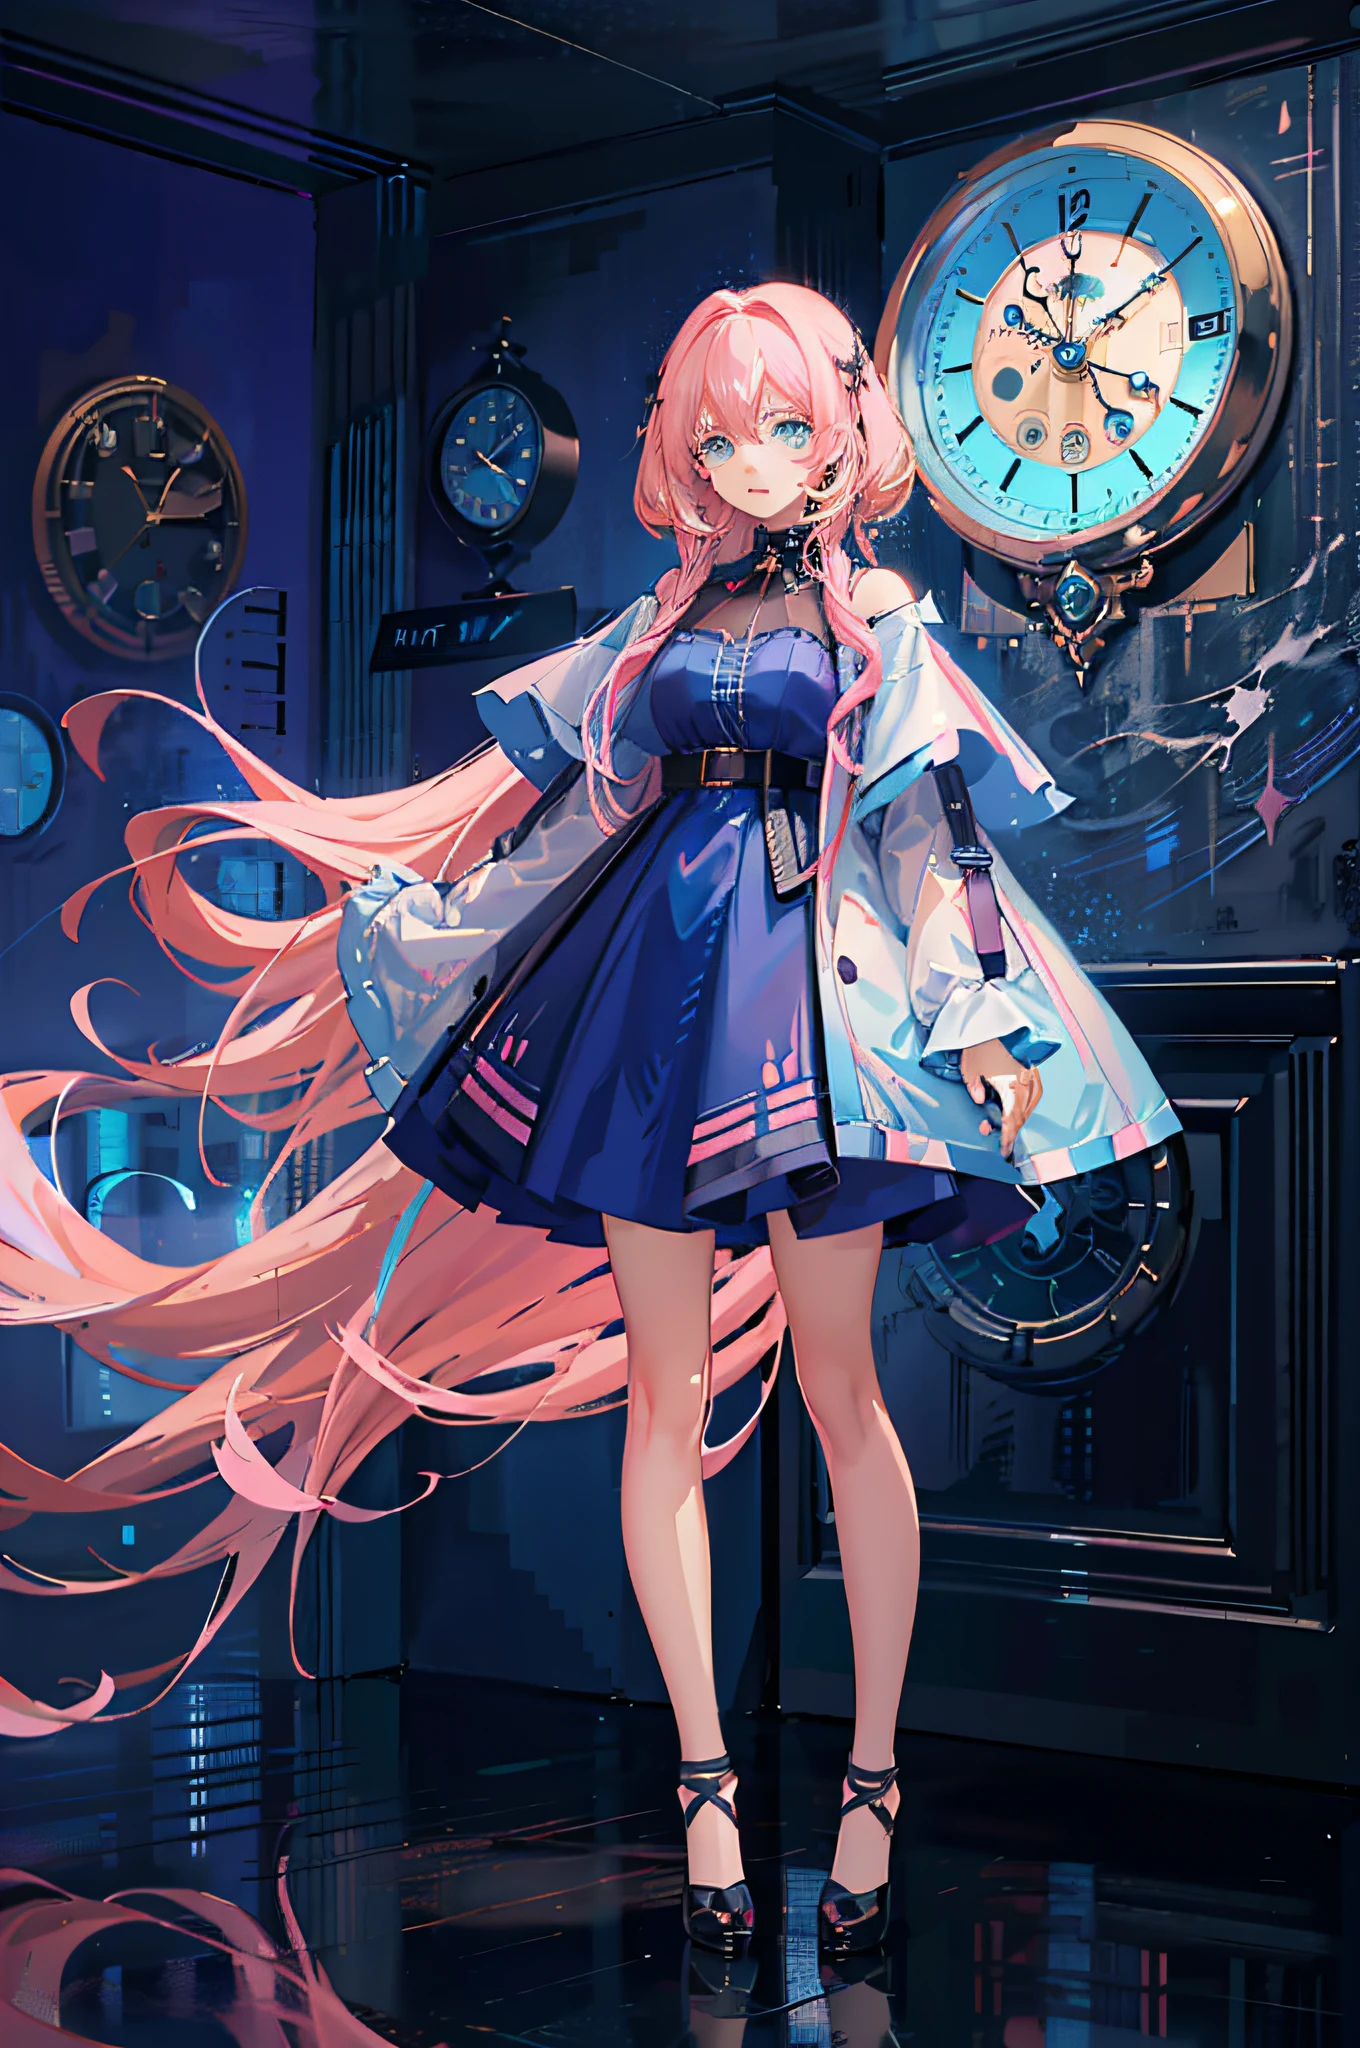 (Ultradetailliertes CG-Anime-Meisterwerk, 4K-Anime-Stil) Anime-Mädchen mit (Lange rosa Haare+Cyanfarbene Augen) stehend vor einem (elegante Wanduhr)+(Unscharfer Hintergrund), trägt einen (Atemberaubendes blaues Kleid) und strahlt eine unwiderstehliche magische Aura aus.